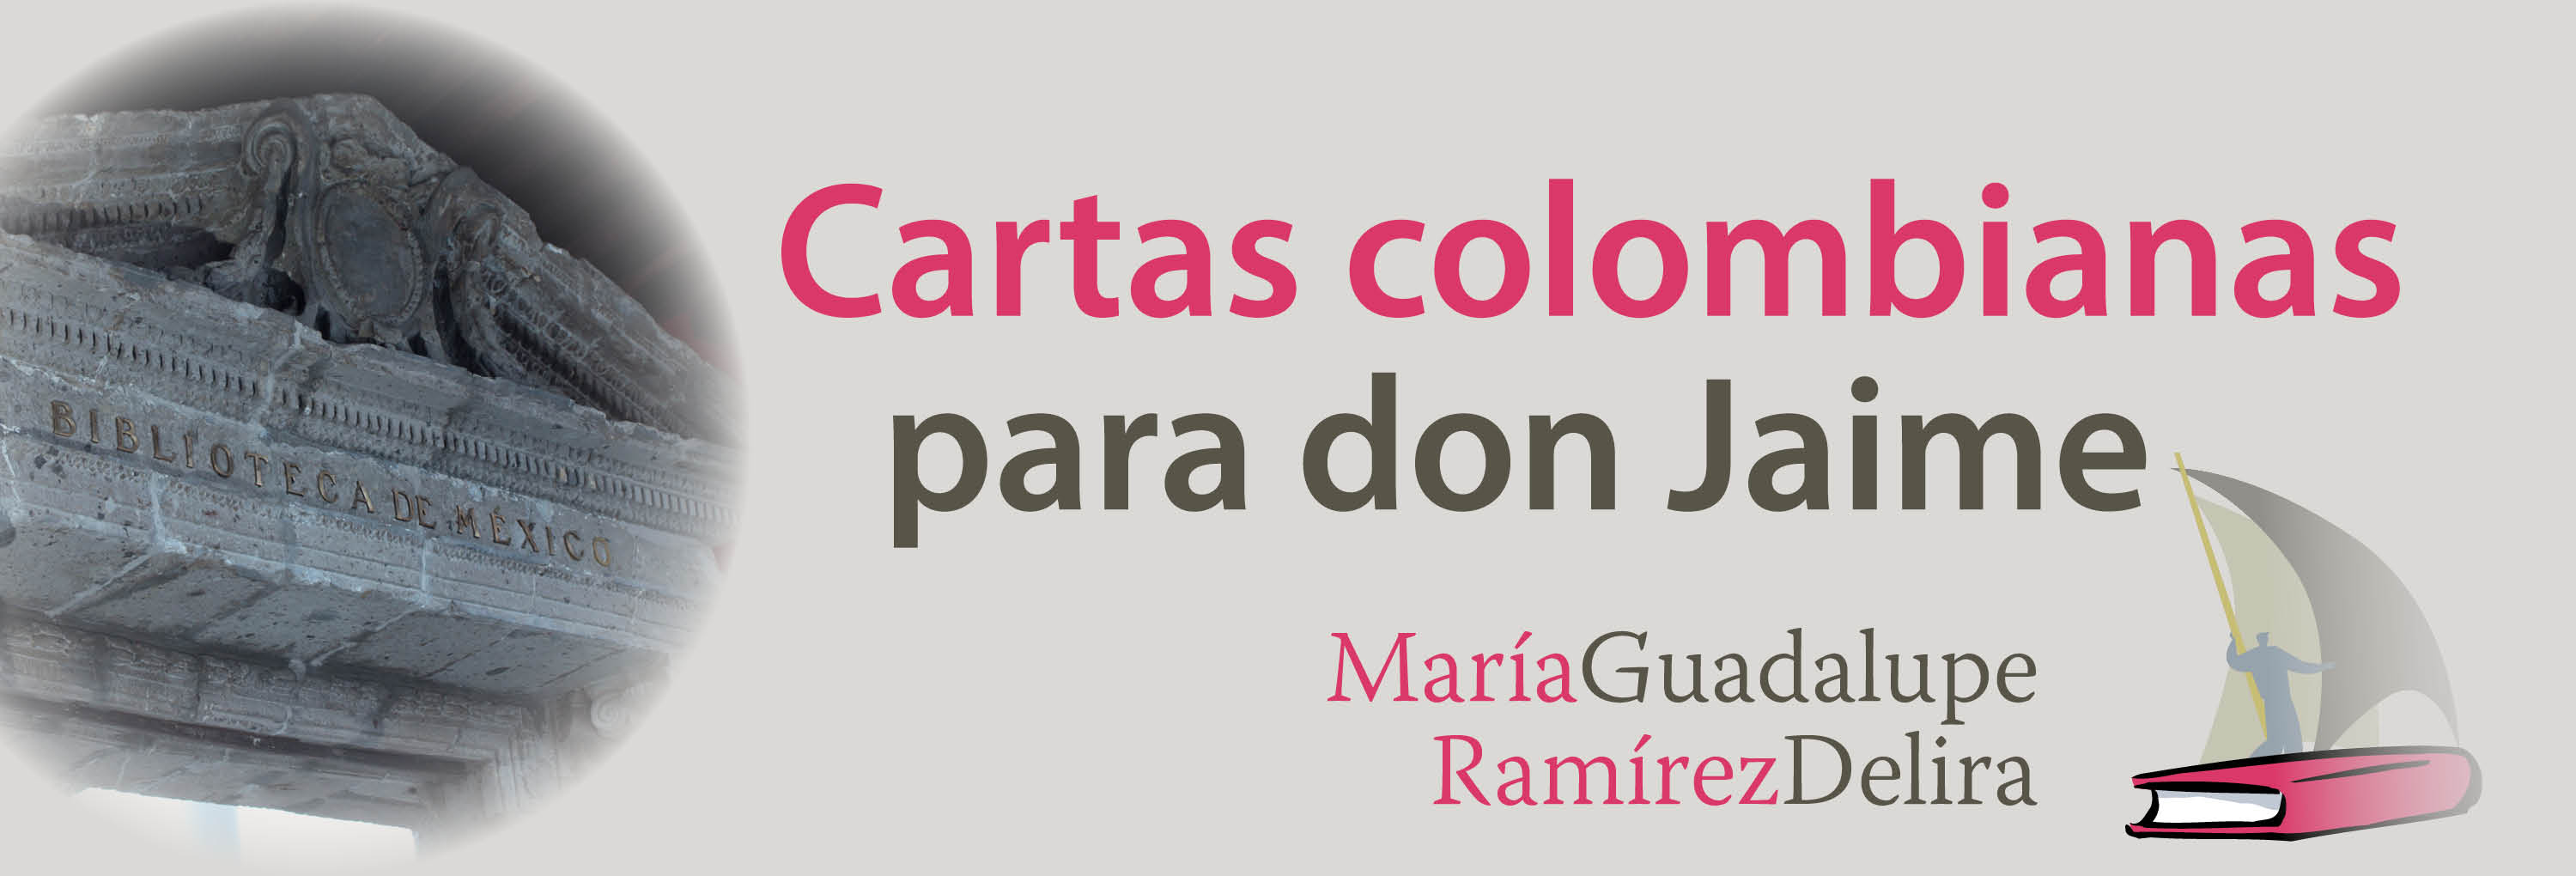 Banner del texto María Guadalupe Ramírez Delira, “Cartas colombianas para don Jaime”>
			</div>
		</header>
			<main class=